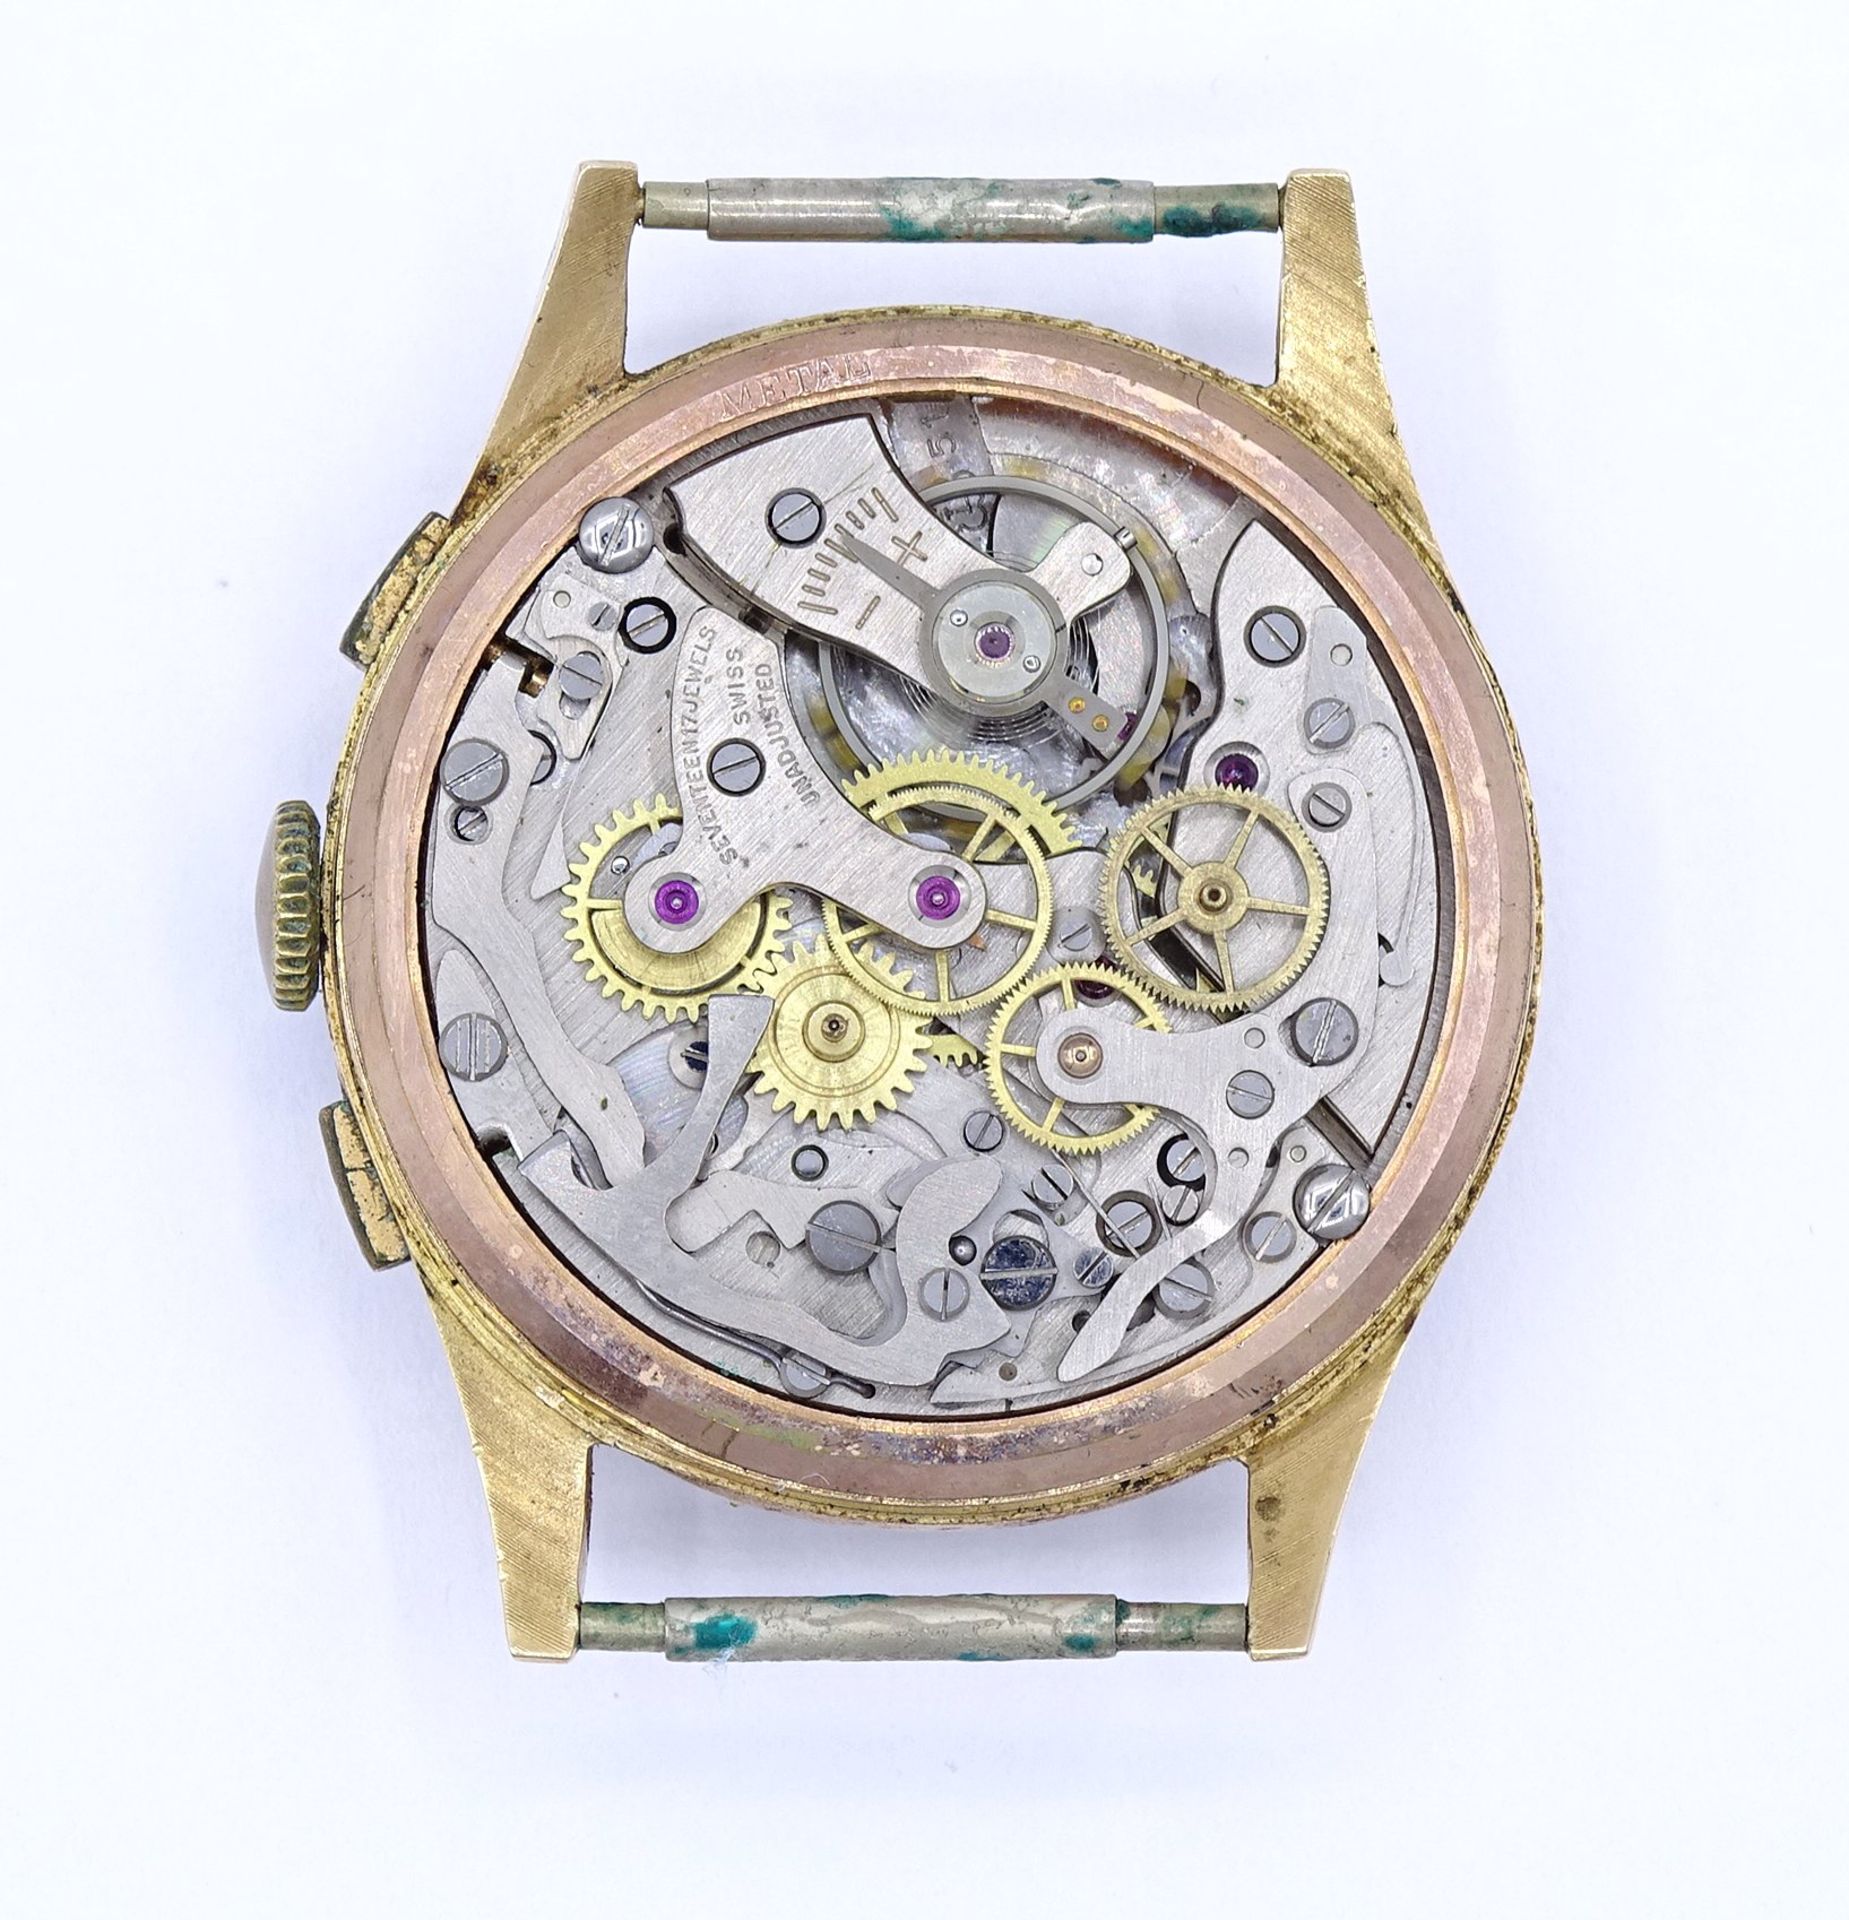 Herren Armbanduhr "Hedicor", Chronograph Suisse, 18K Gold, mechanisch, Werk läuft, D. 35,7mm - Bild 5 aus 5